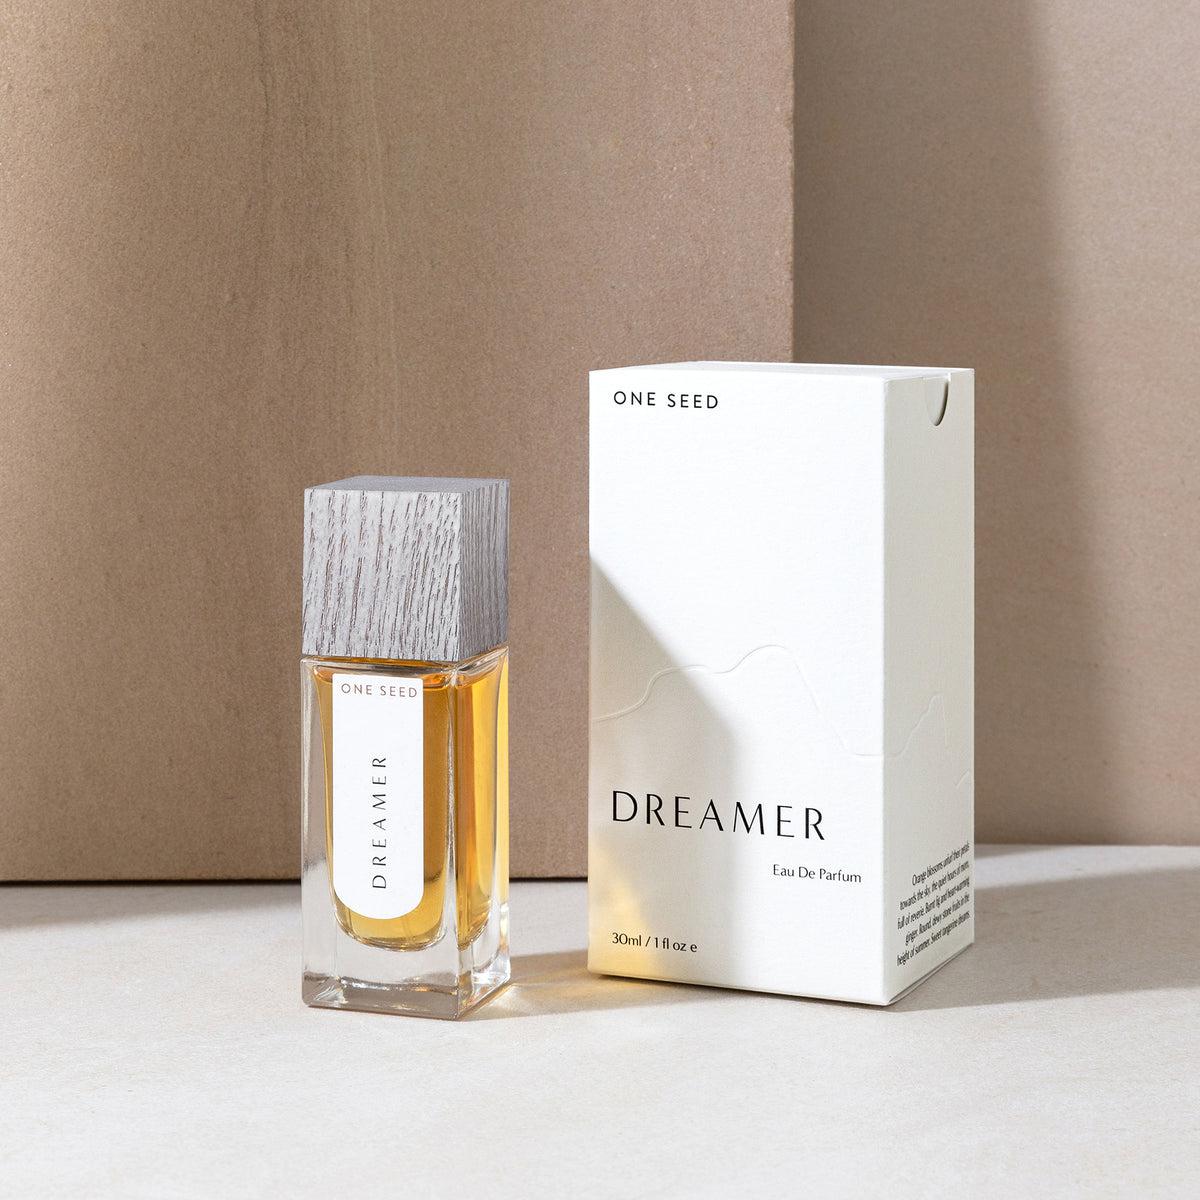 One Seed - Dreamer eau de parfum 30ml - The Bare Theory